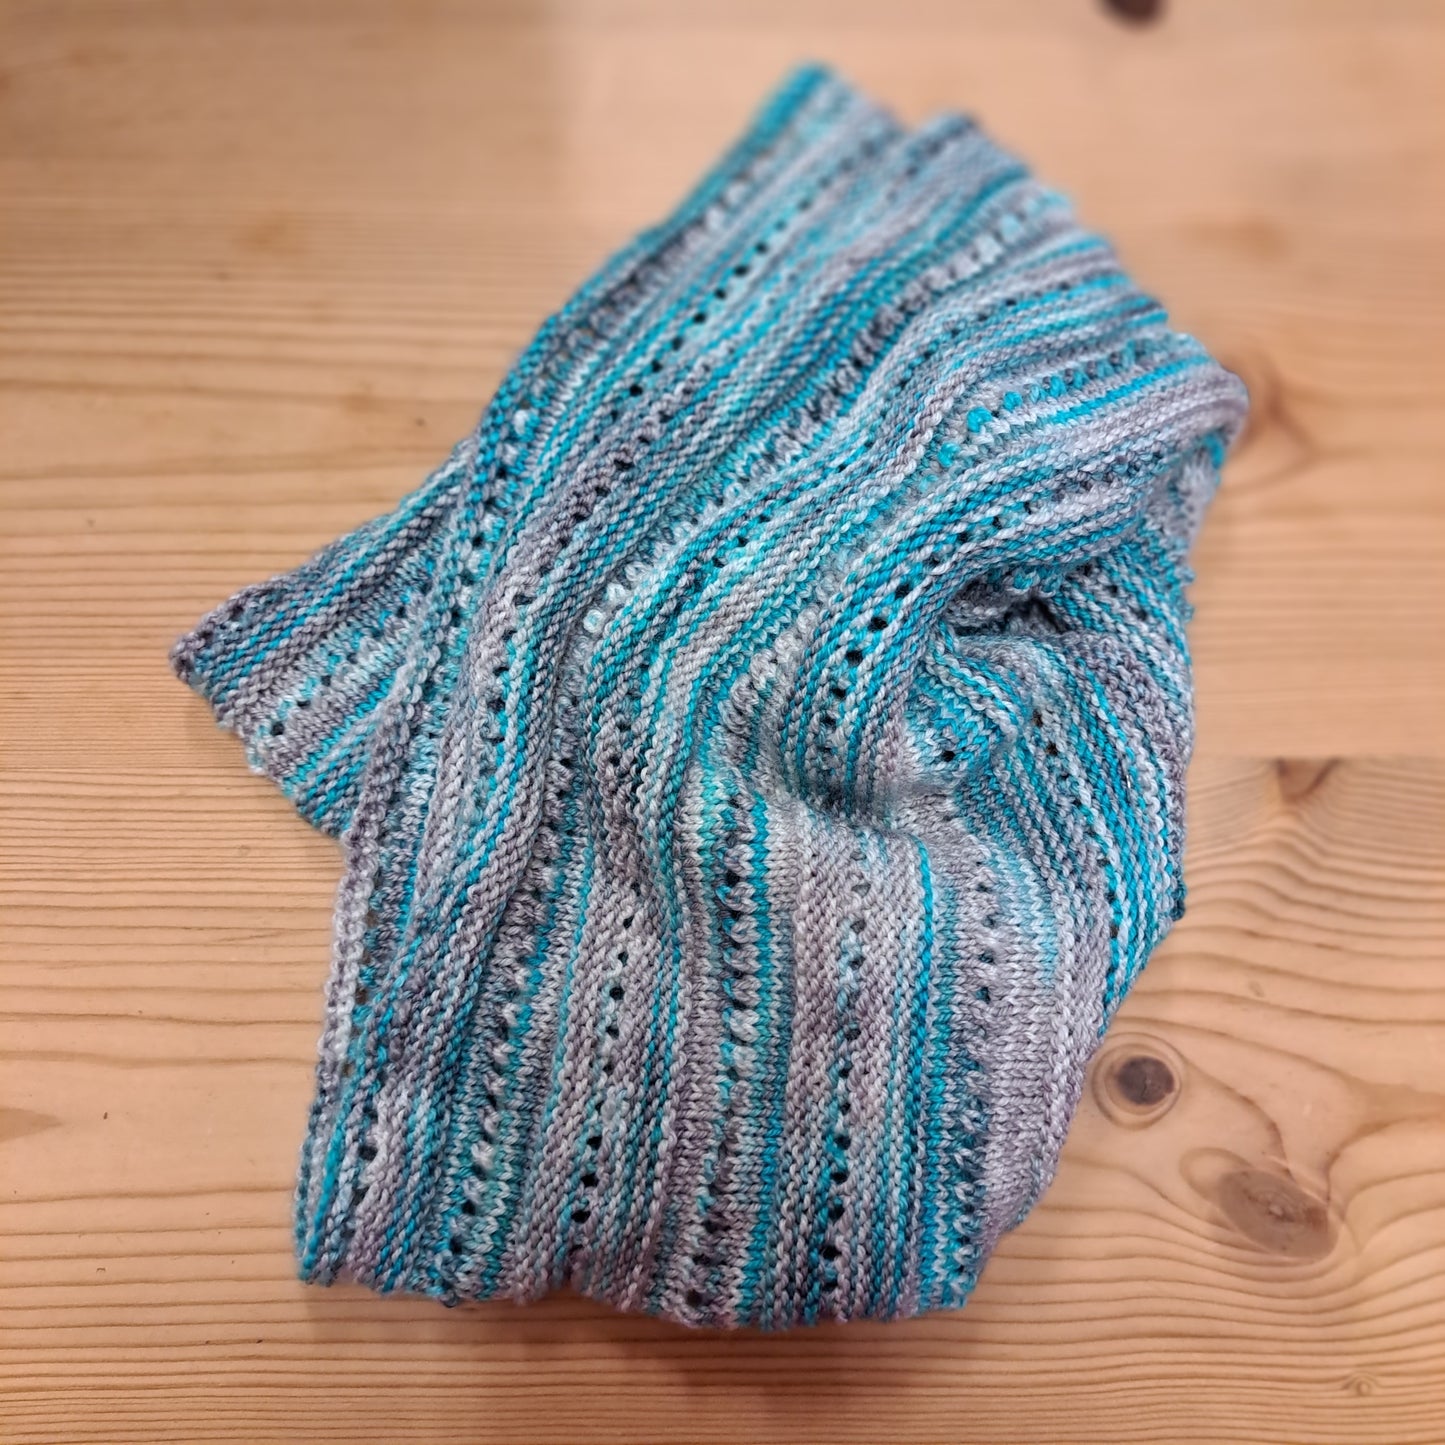 Kurs 3: ein schönes Tuch stricken